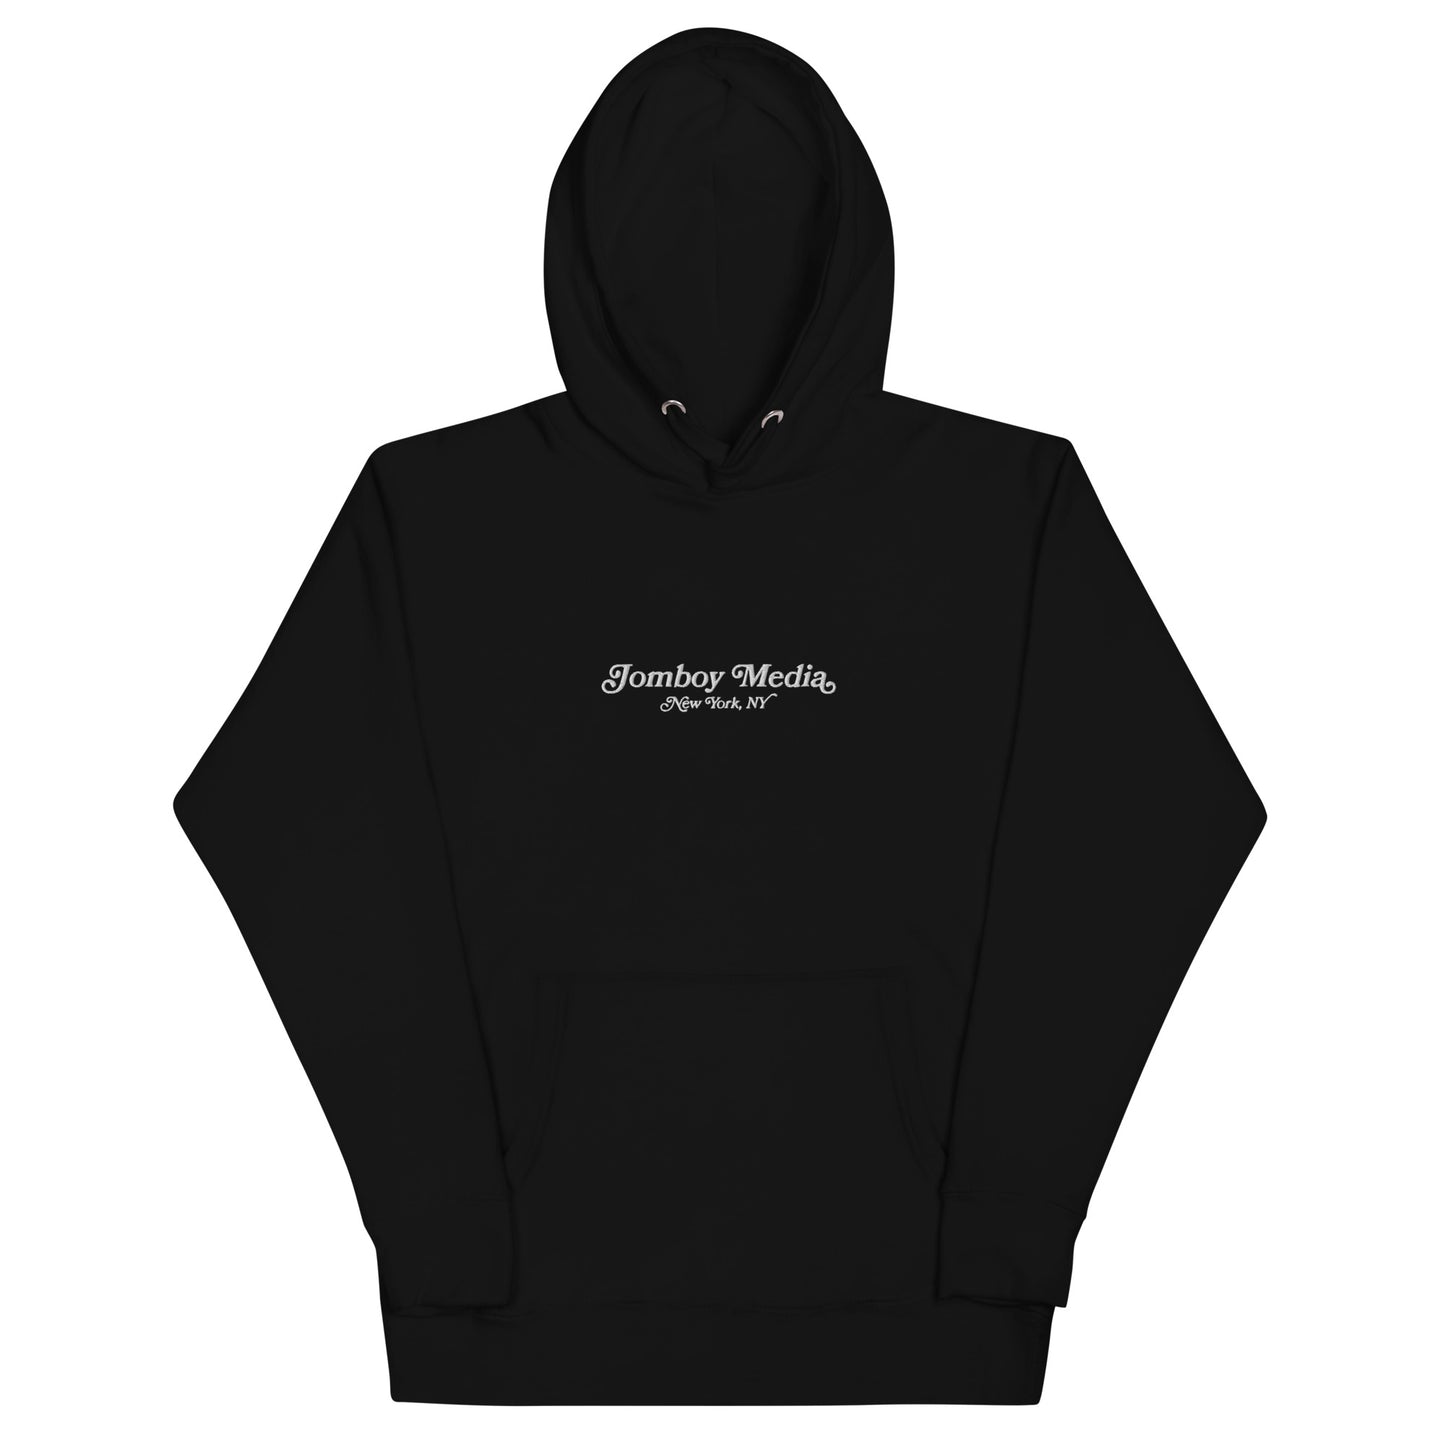 Supreme Le Luxe Hooded Sweatshirt Black